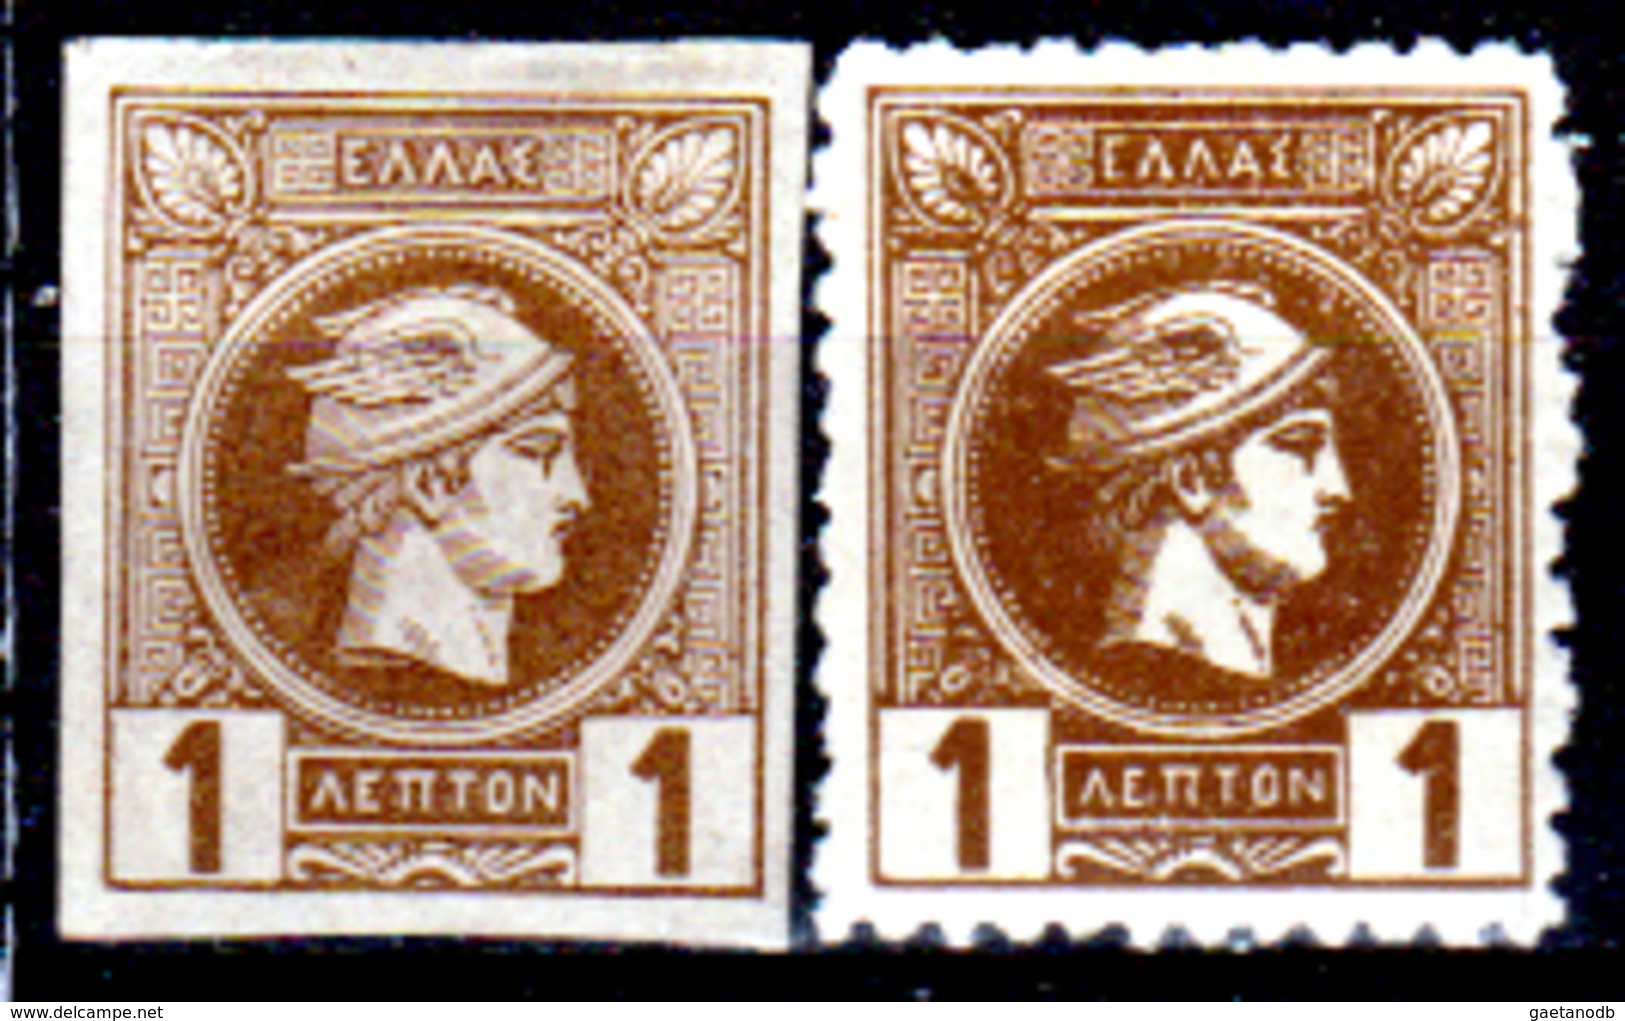 Grecia-F0098 - Emissione 1886-1889 - Valore Da 1 Lepta (sg/+) NG/Hinged - Senza Difetti Occulti. - Unused Stamps